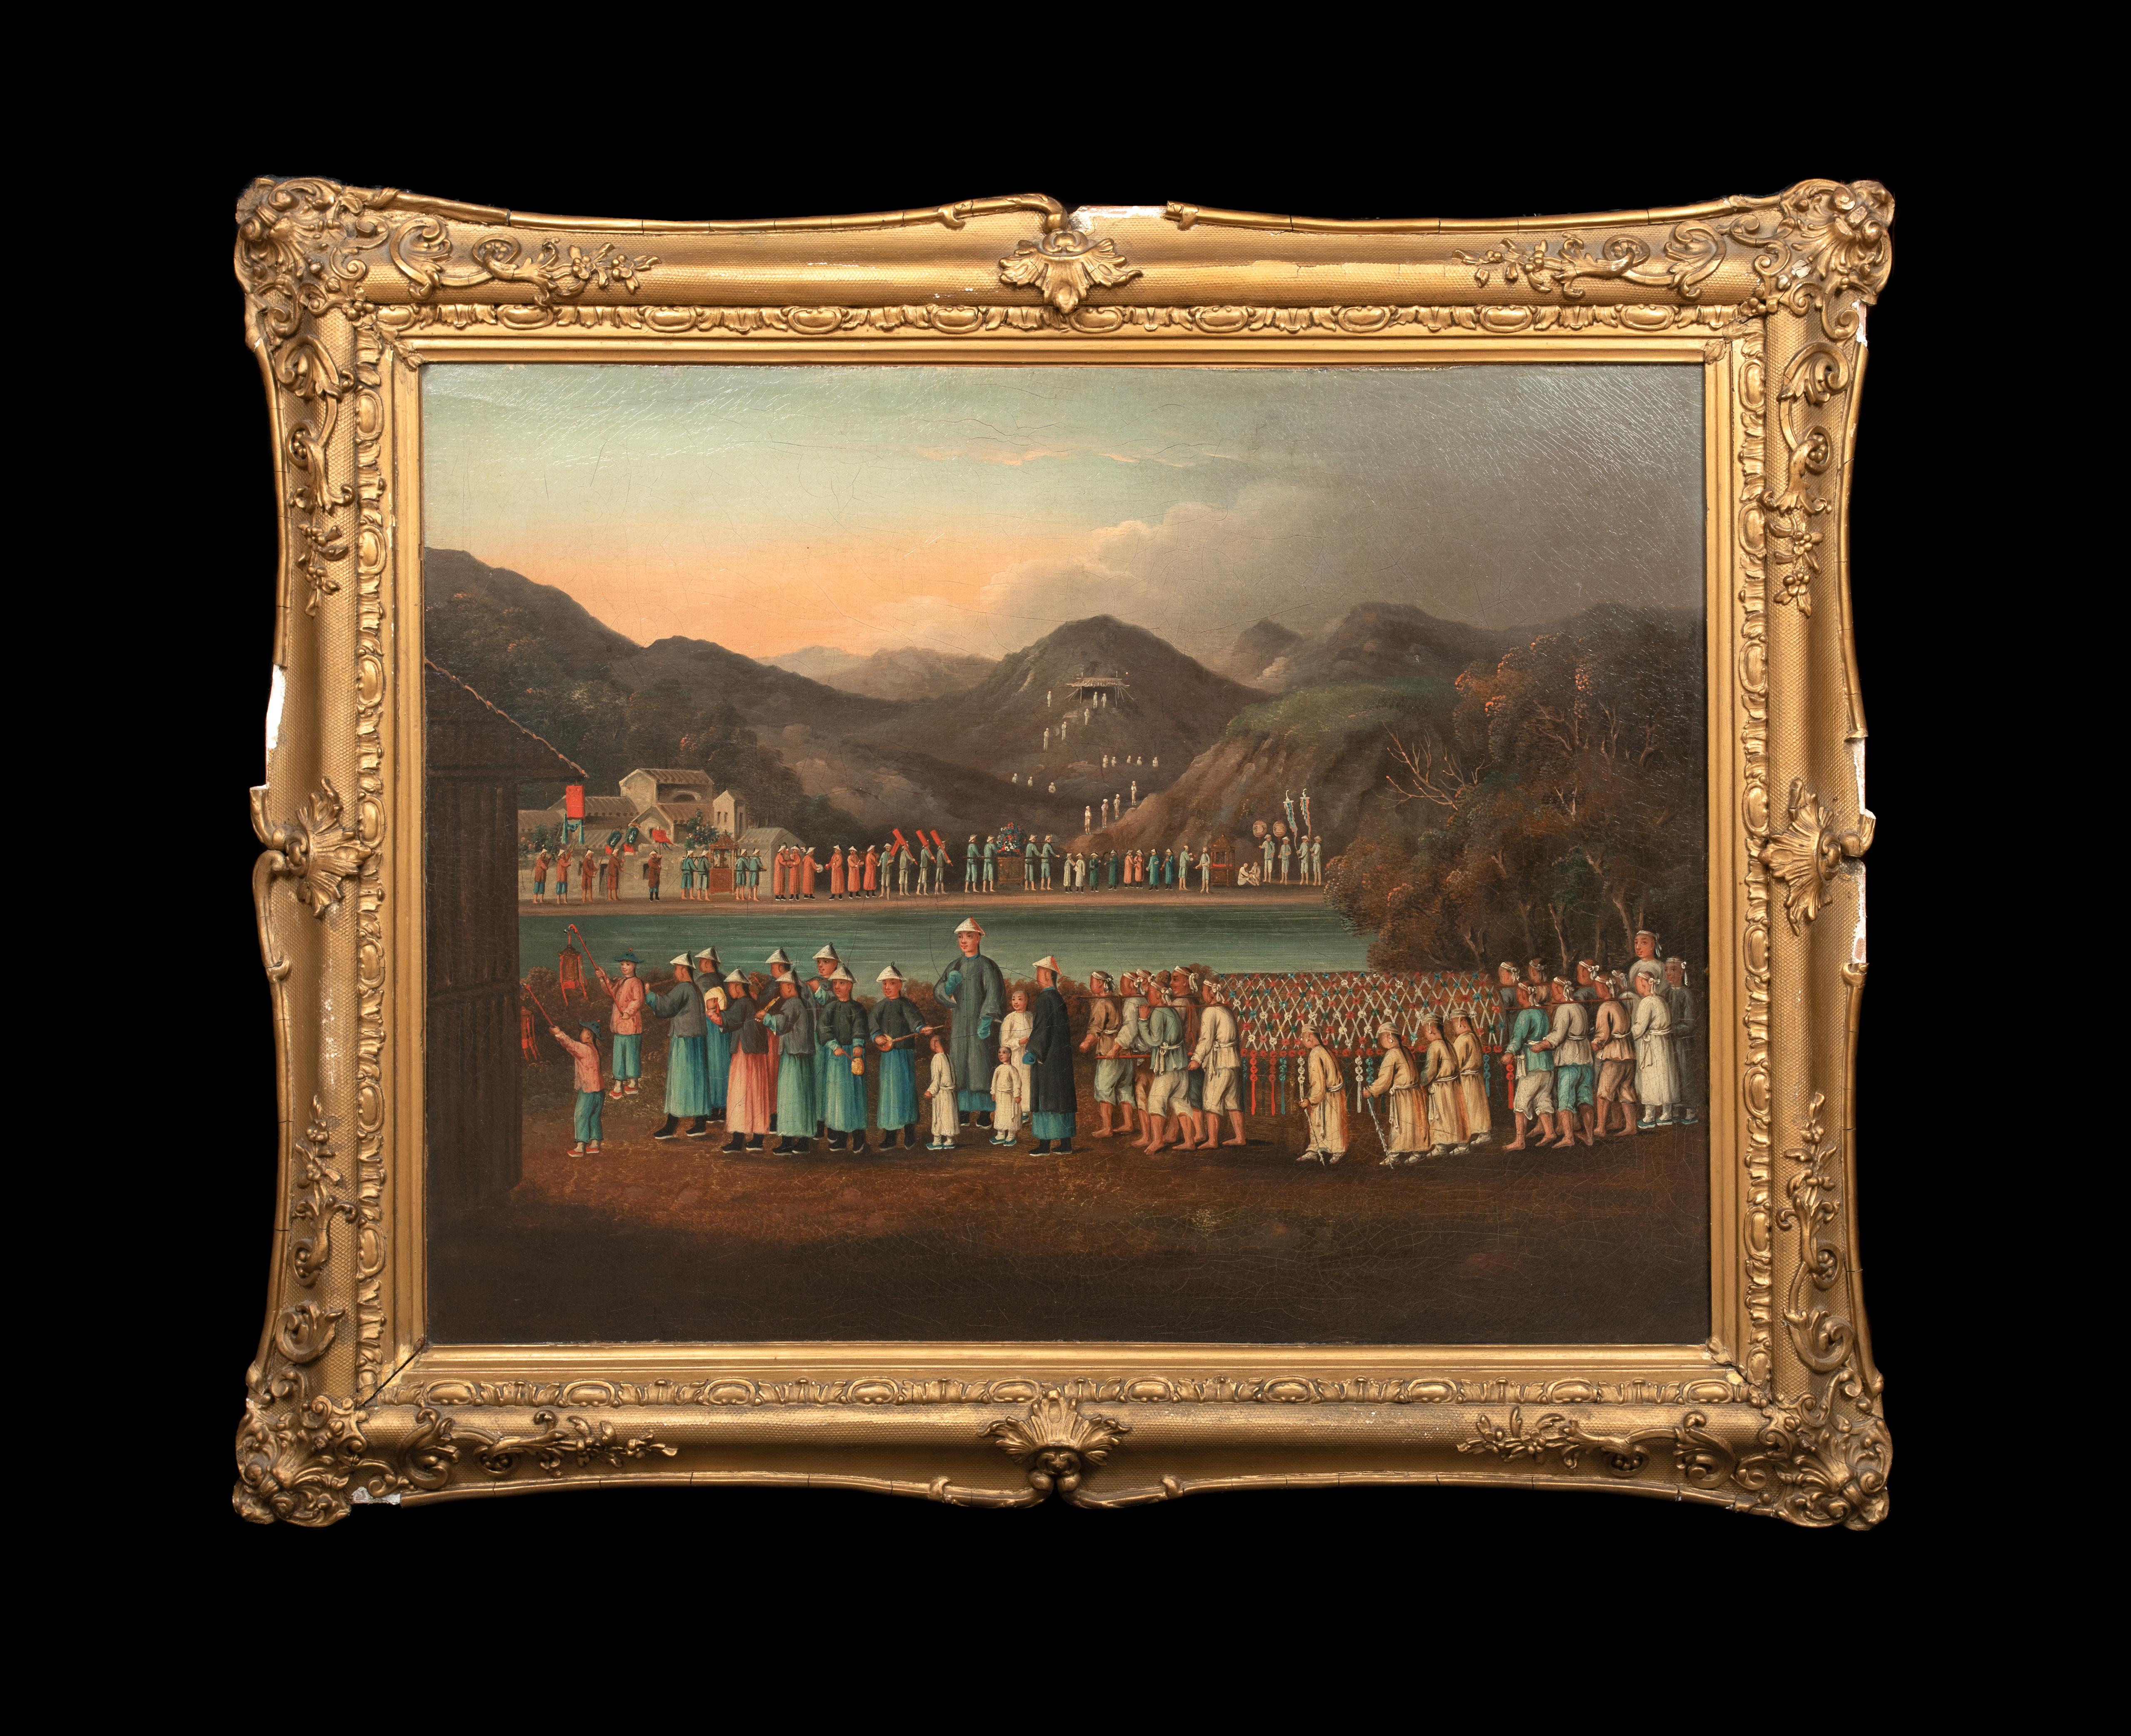 The Funeral Procession, um 1820   Chinesische Schule – Painting von Unknown